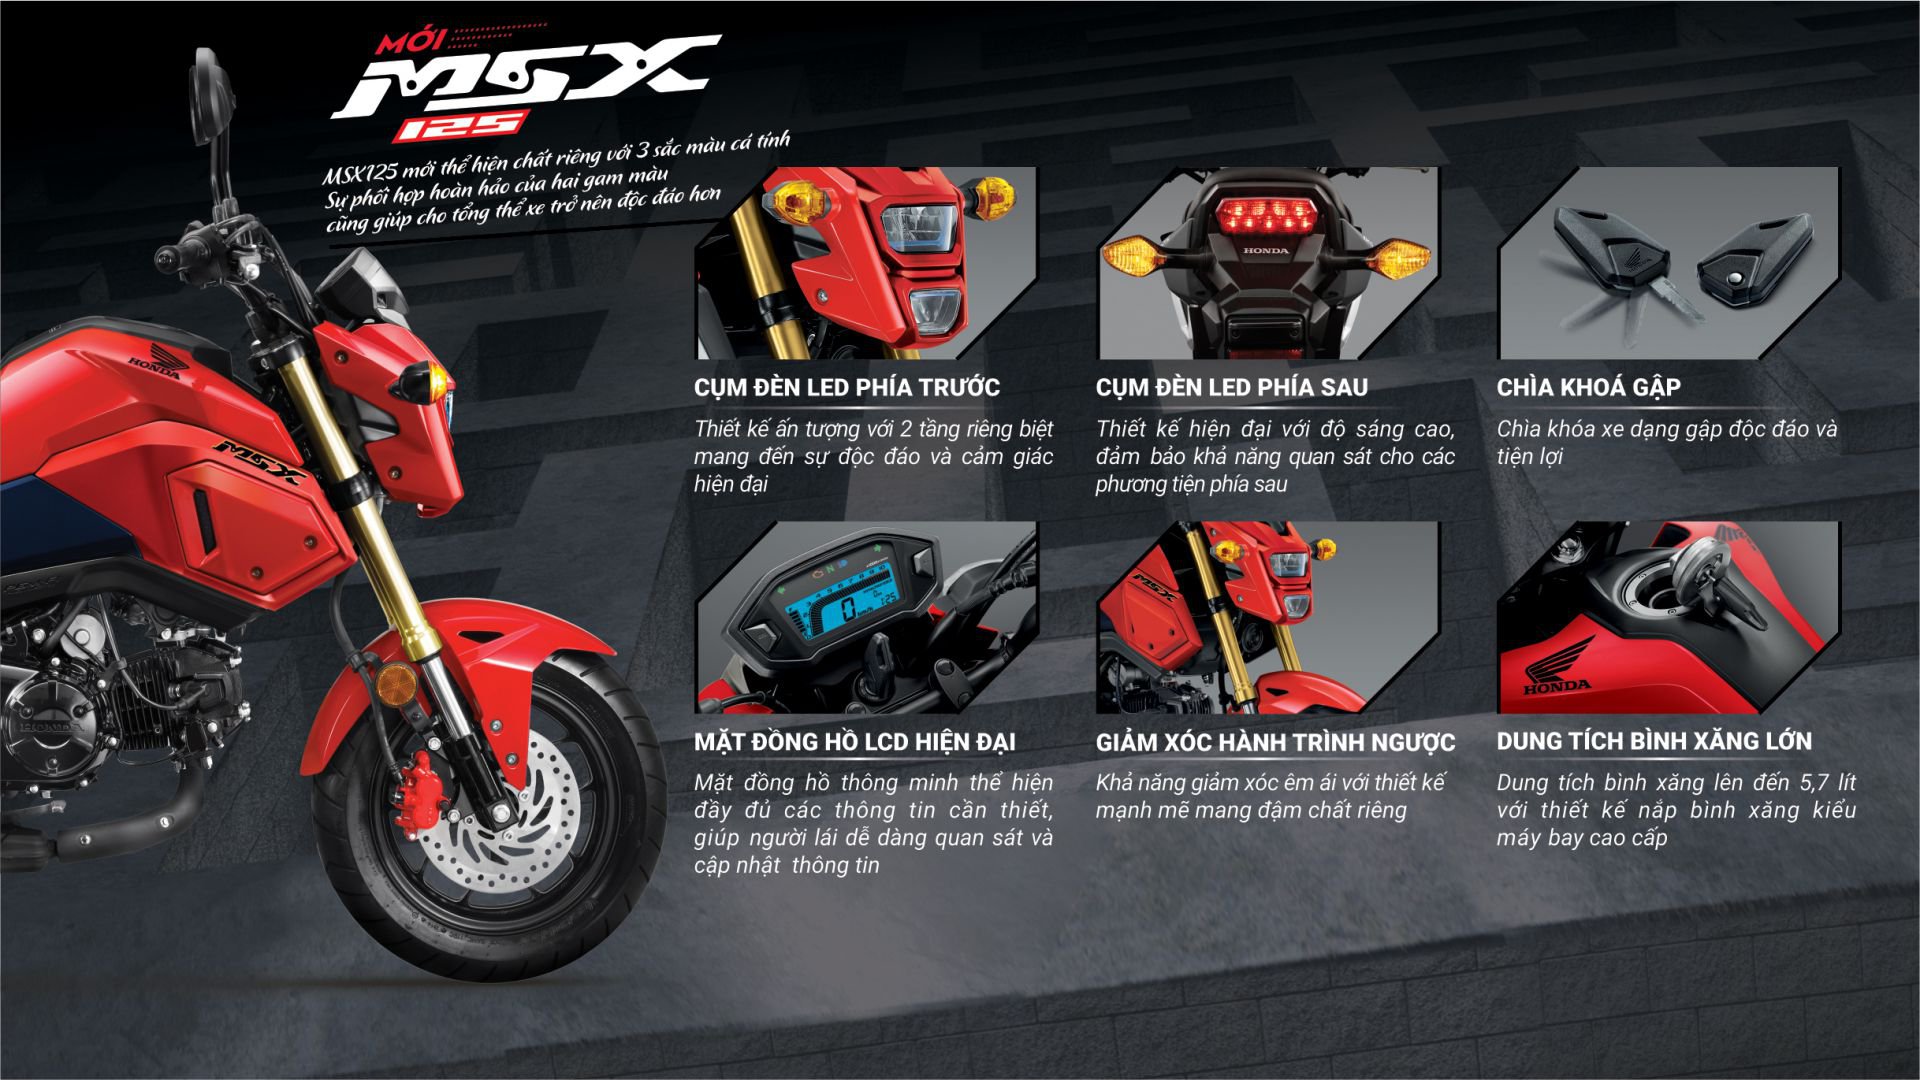 Đánh Giá Xe Máy Honda MSX 110cc 2020 giá khuyễn mãi 23500000đ  Xe Bảo  Nam  YouTube